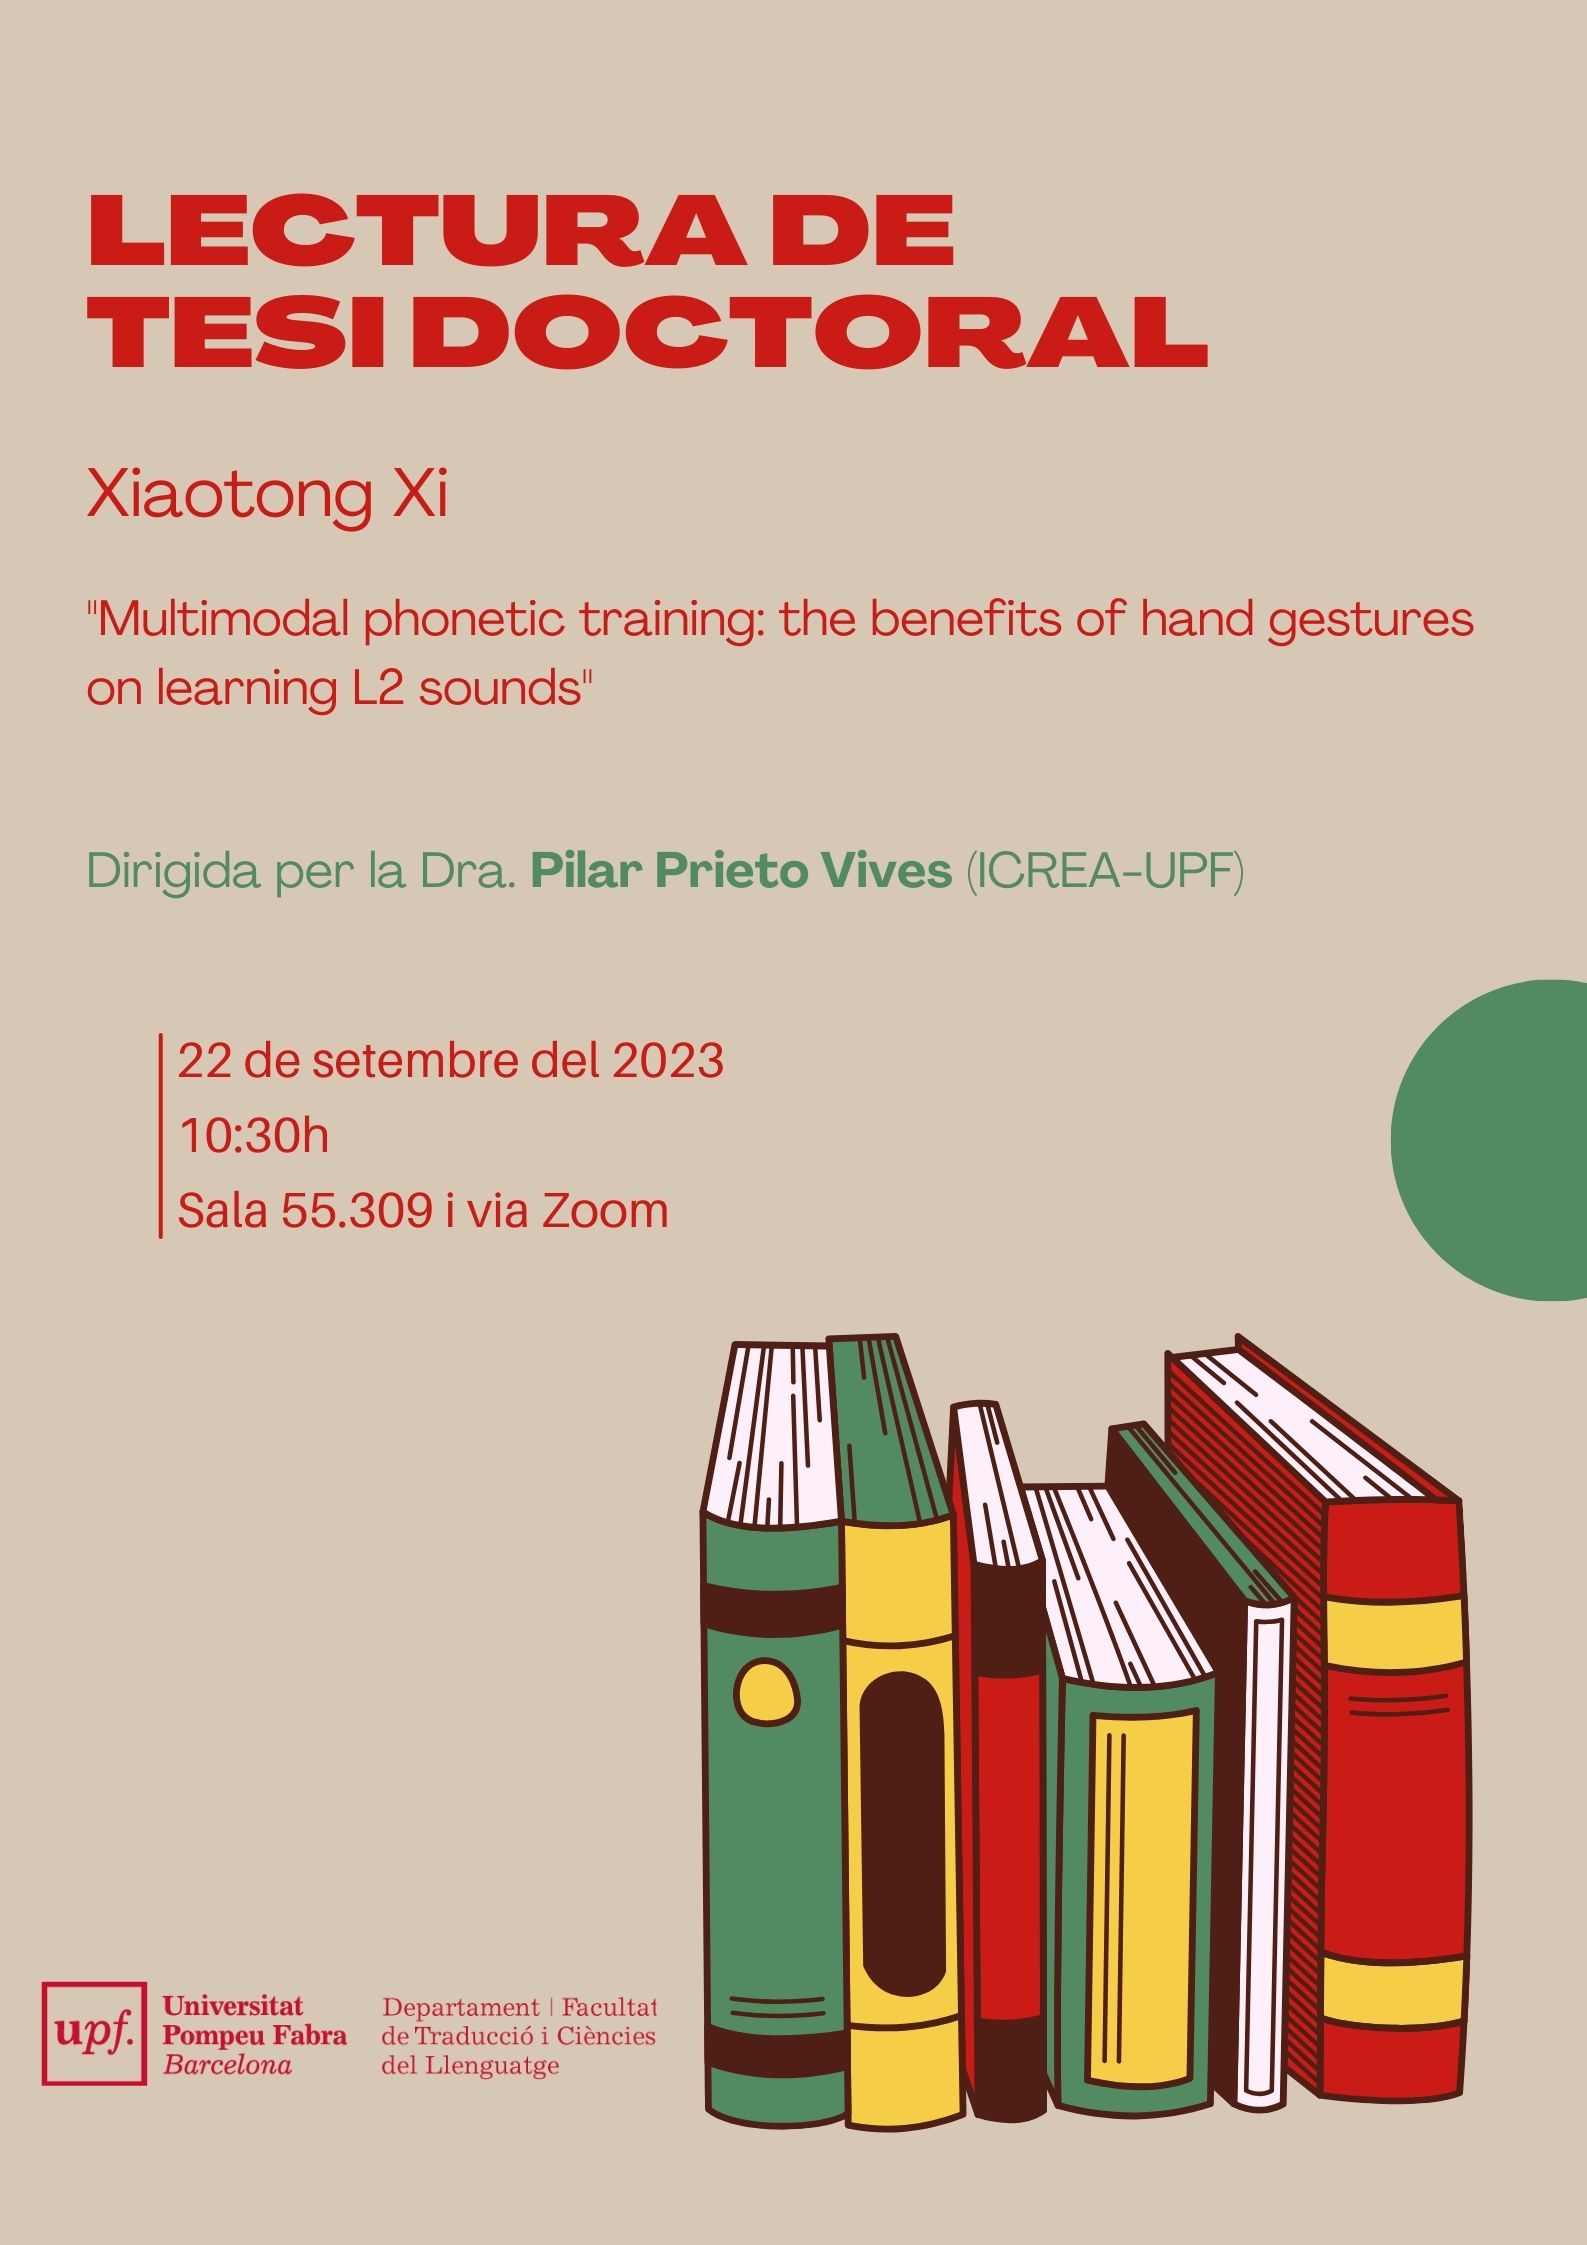 22/09/2023 Lectura de la tesi doctoral de la Xiaotong Xi, a les 10.30 hores